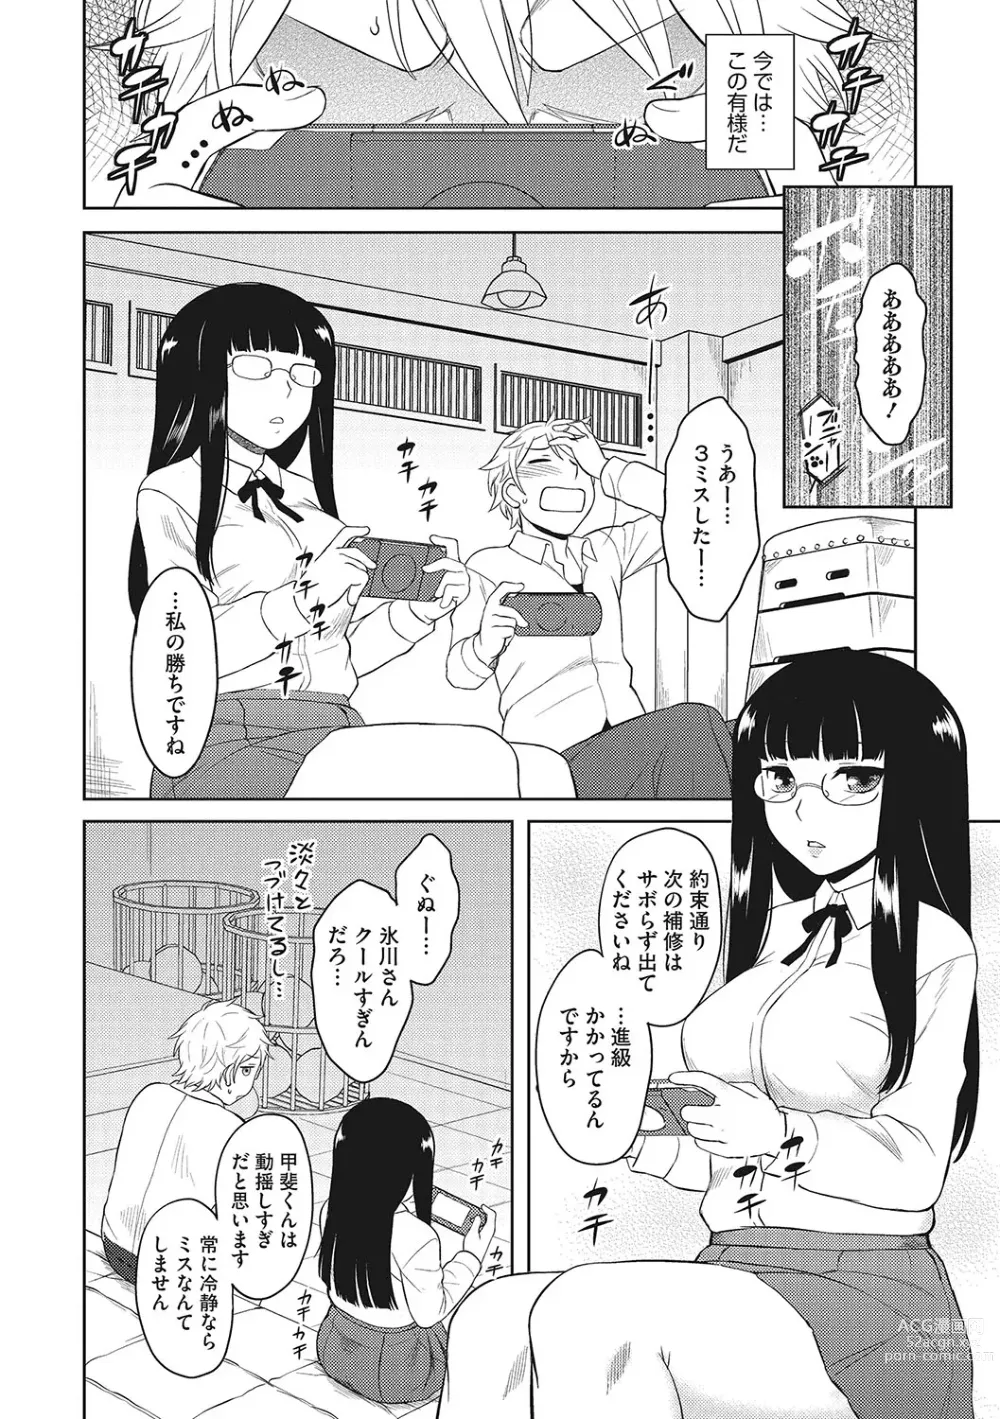 Page 7 of manga Yuuwaku Angle